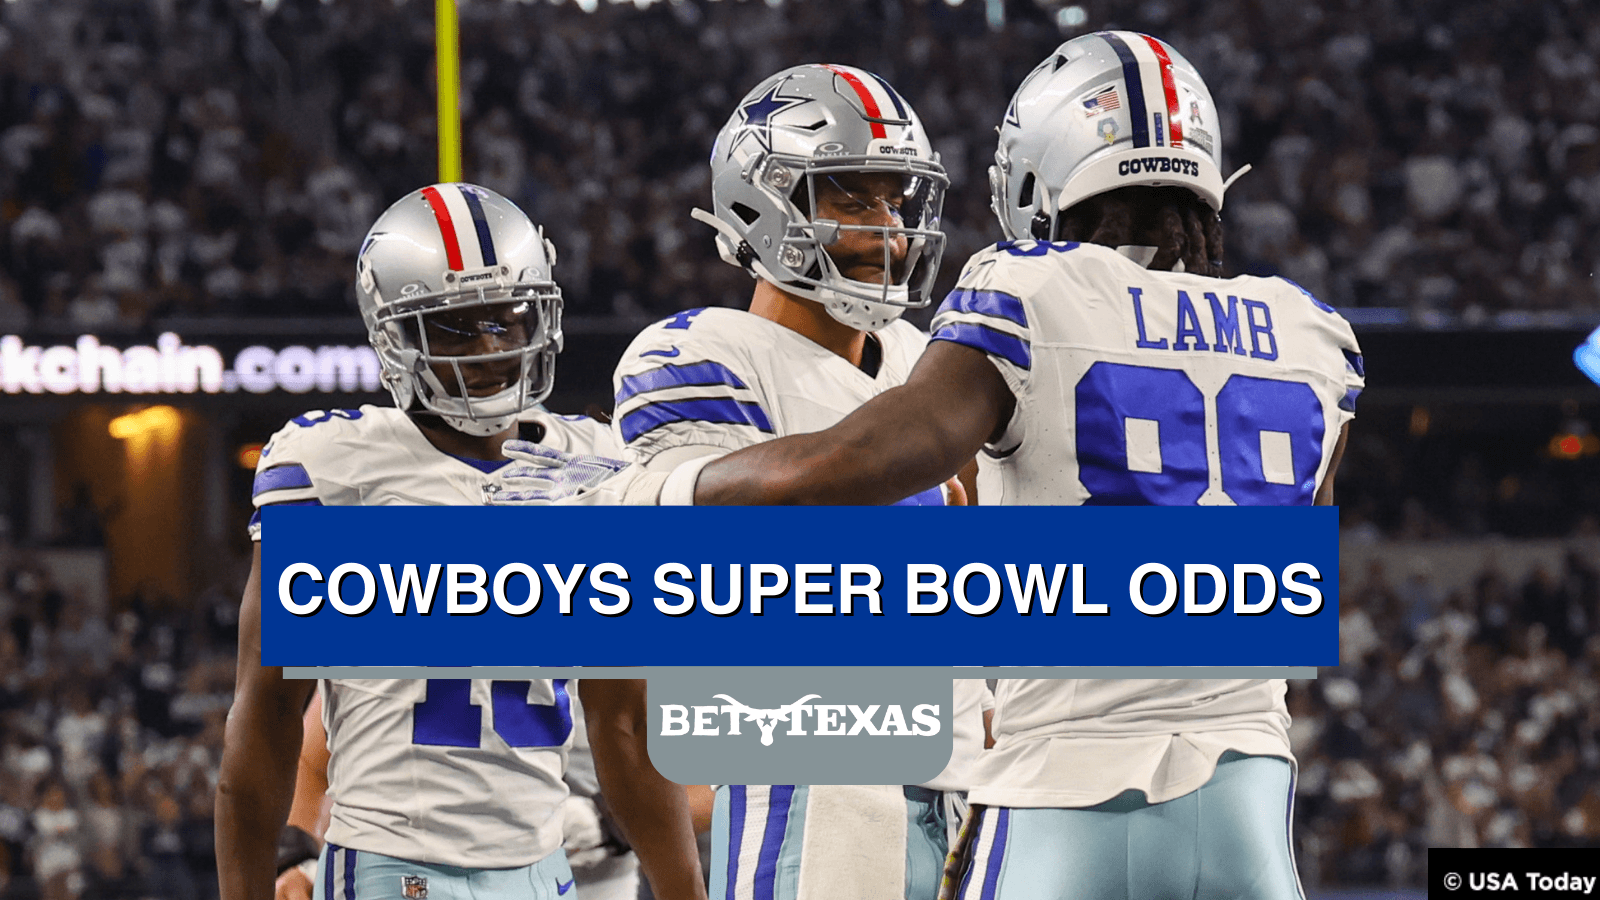 Photo: cowboys superbowl odds